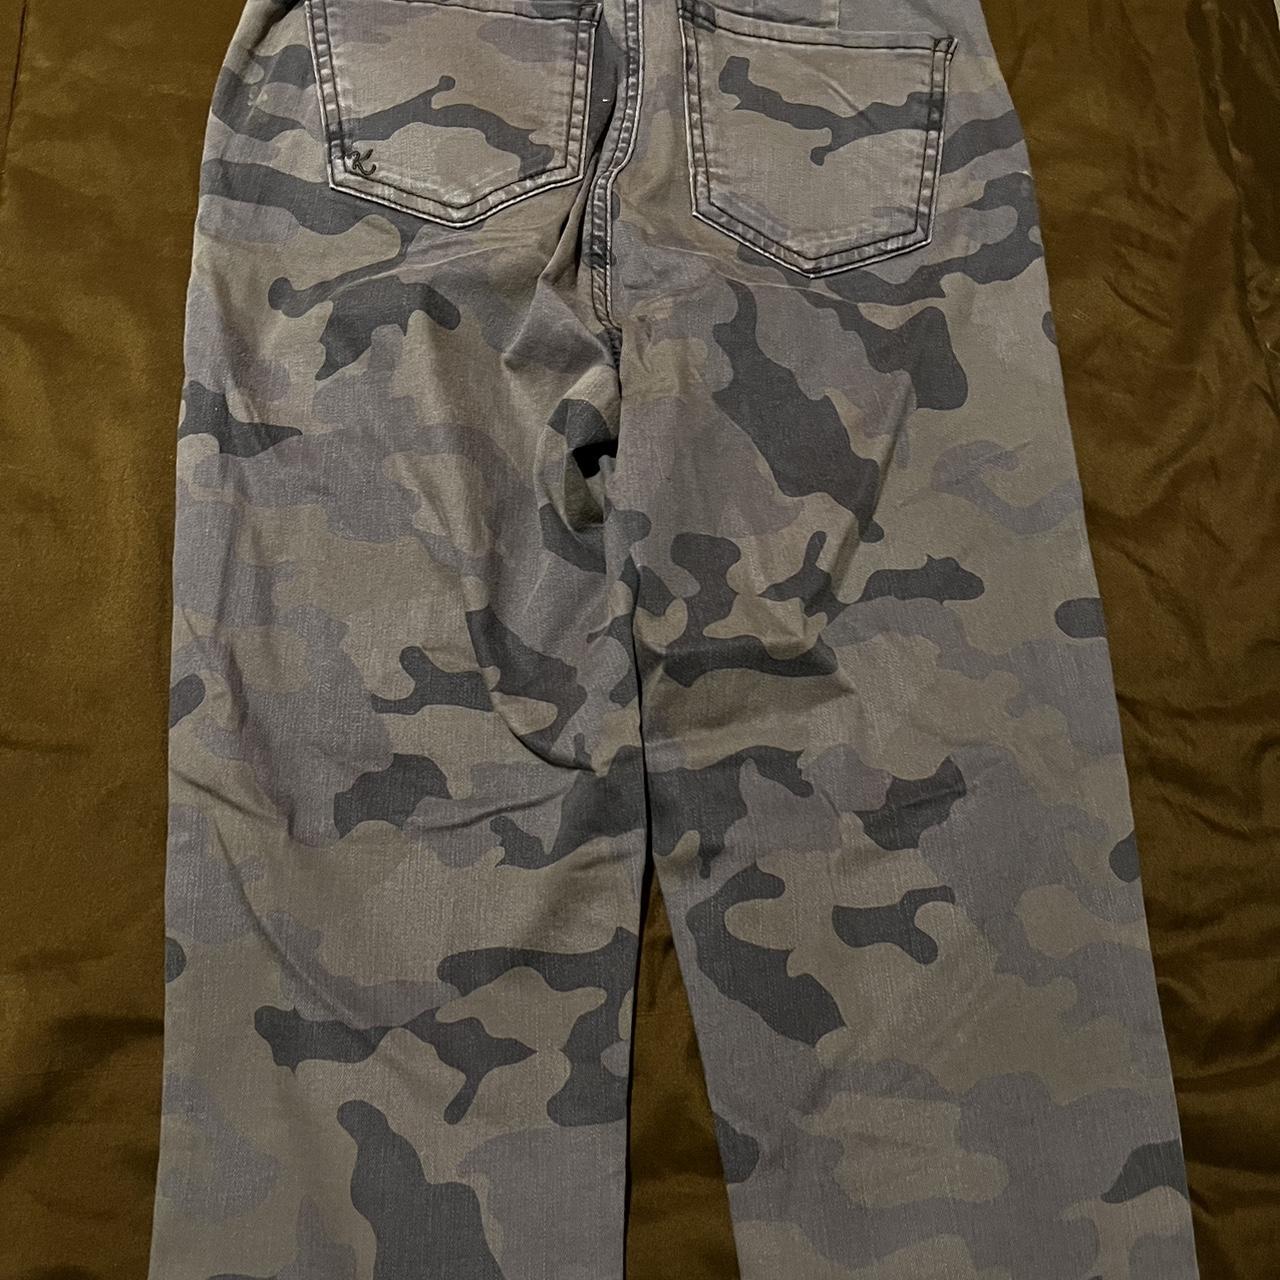 Grey Camo cargo pants from KUT - Depop